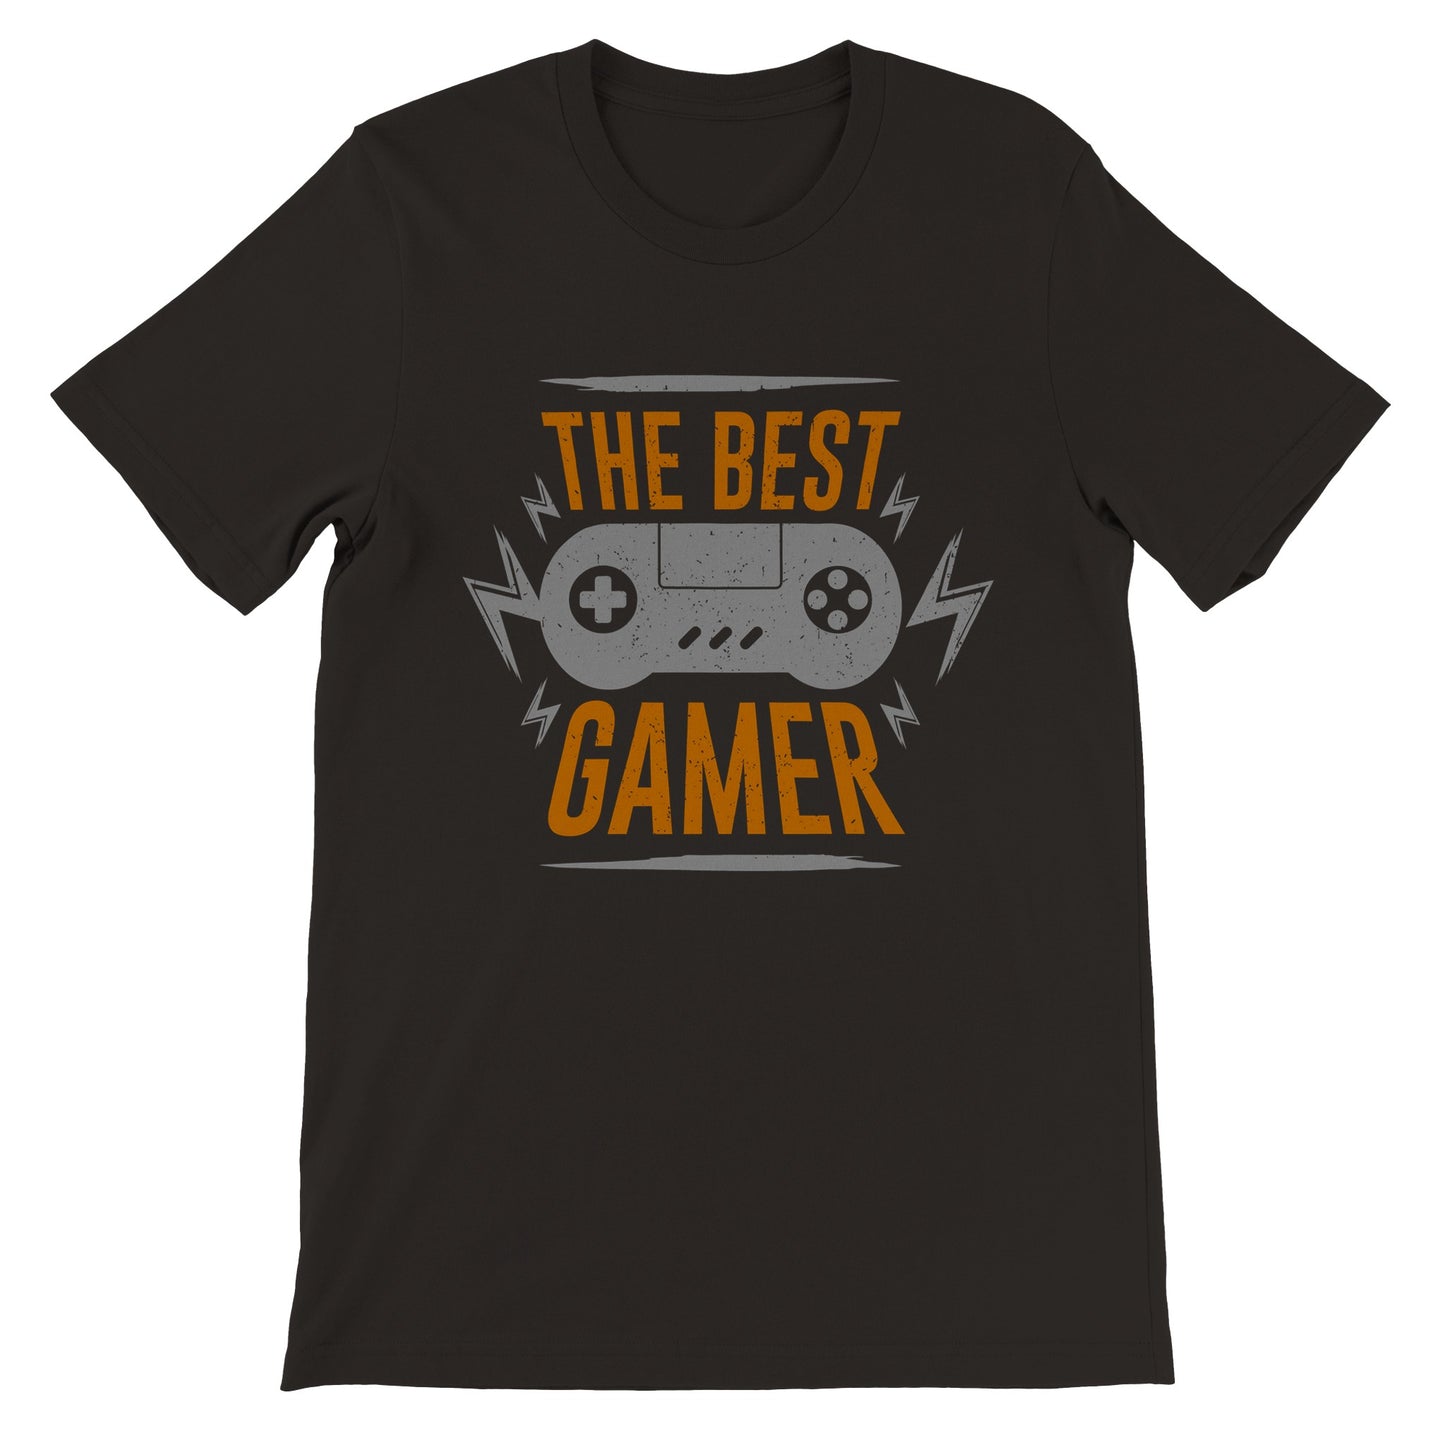 Gaming T-shirts - The Best Gamer - Premium Unisex T-shirt